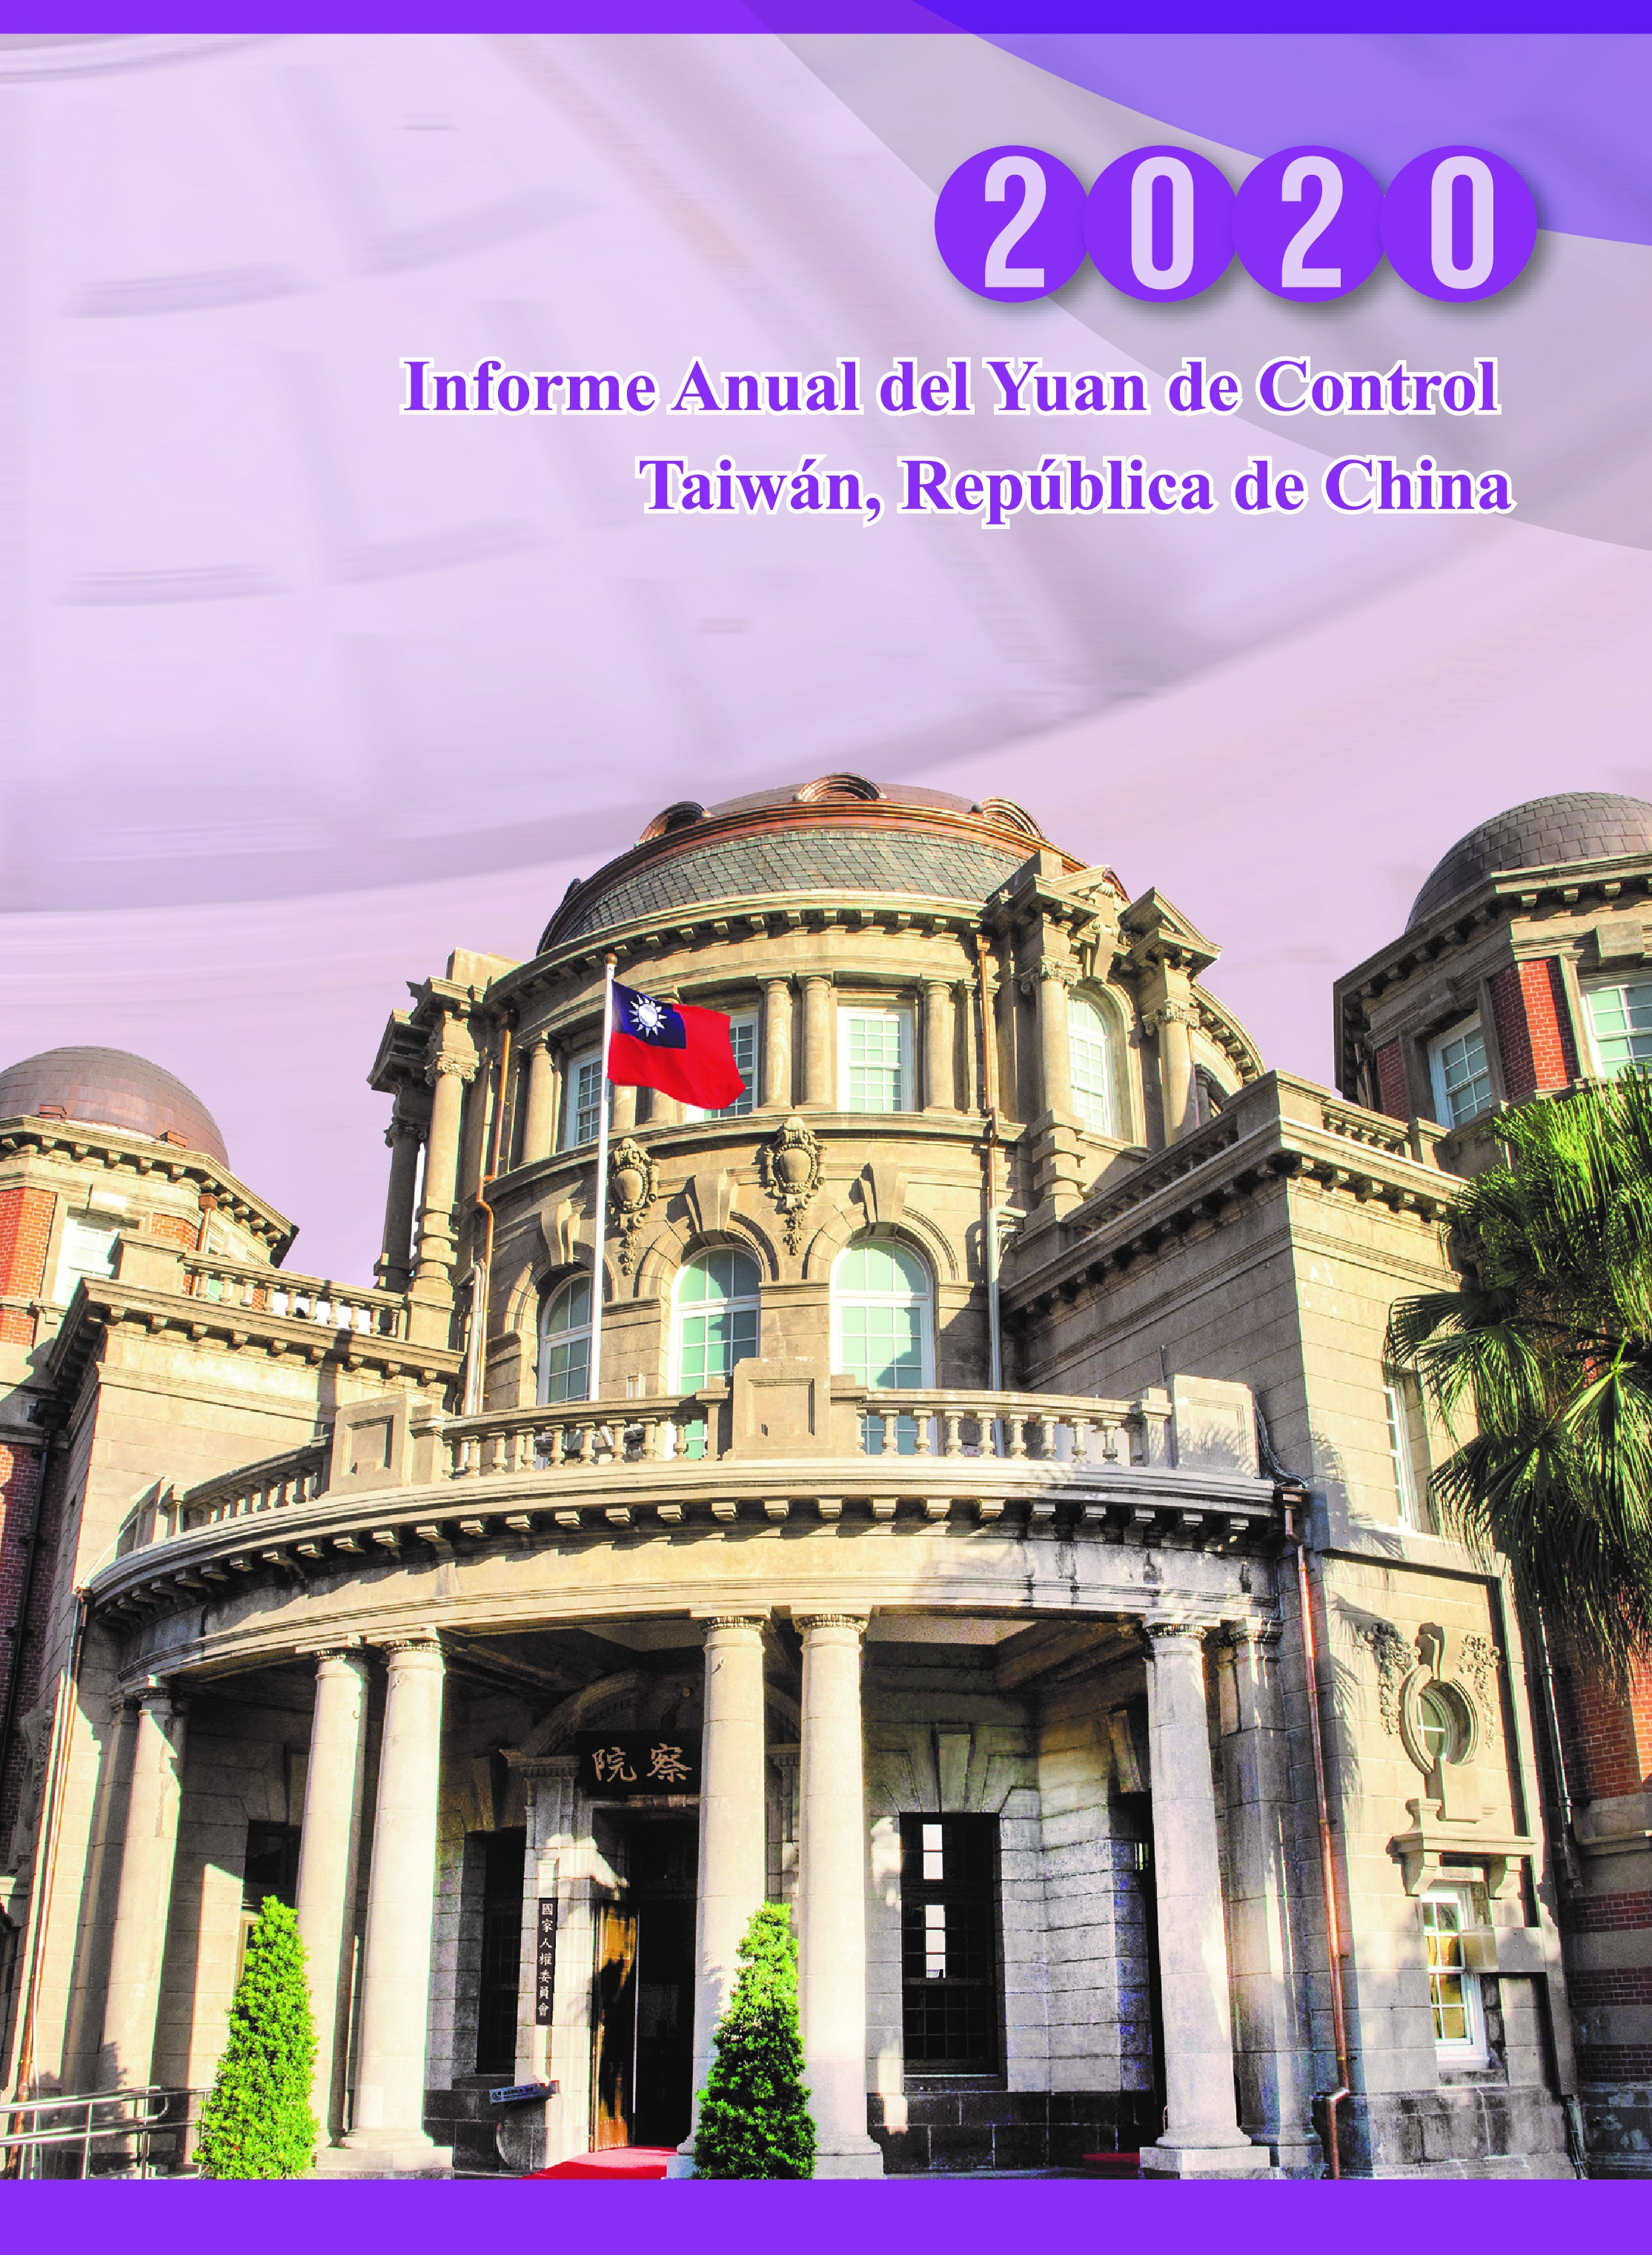 Informe Anual del Yuan de Control, 2020